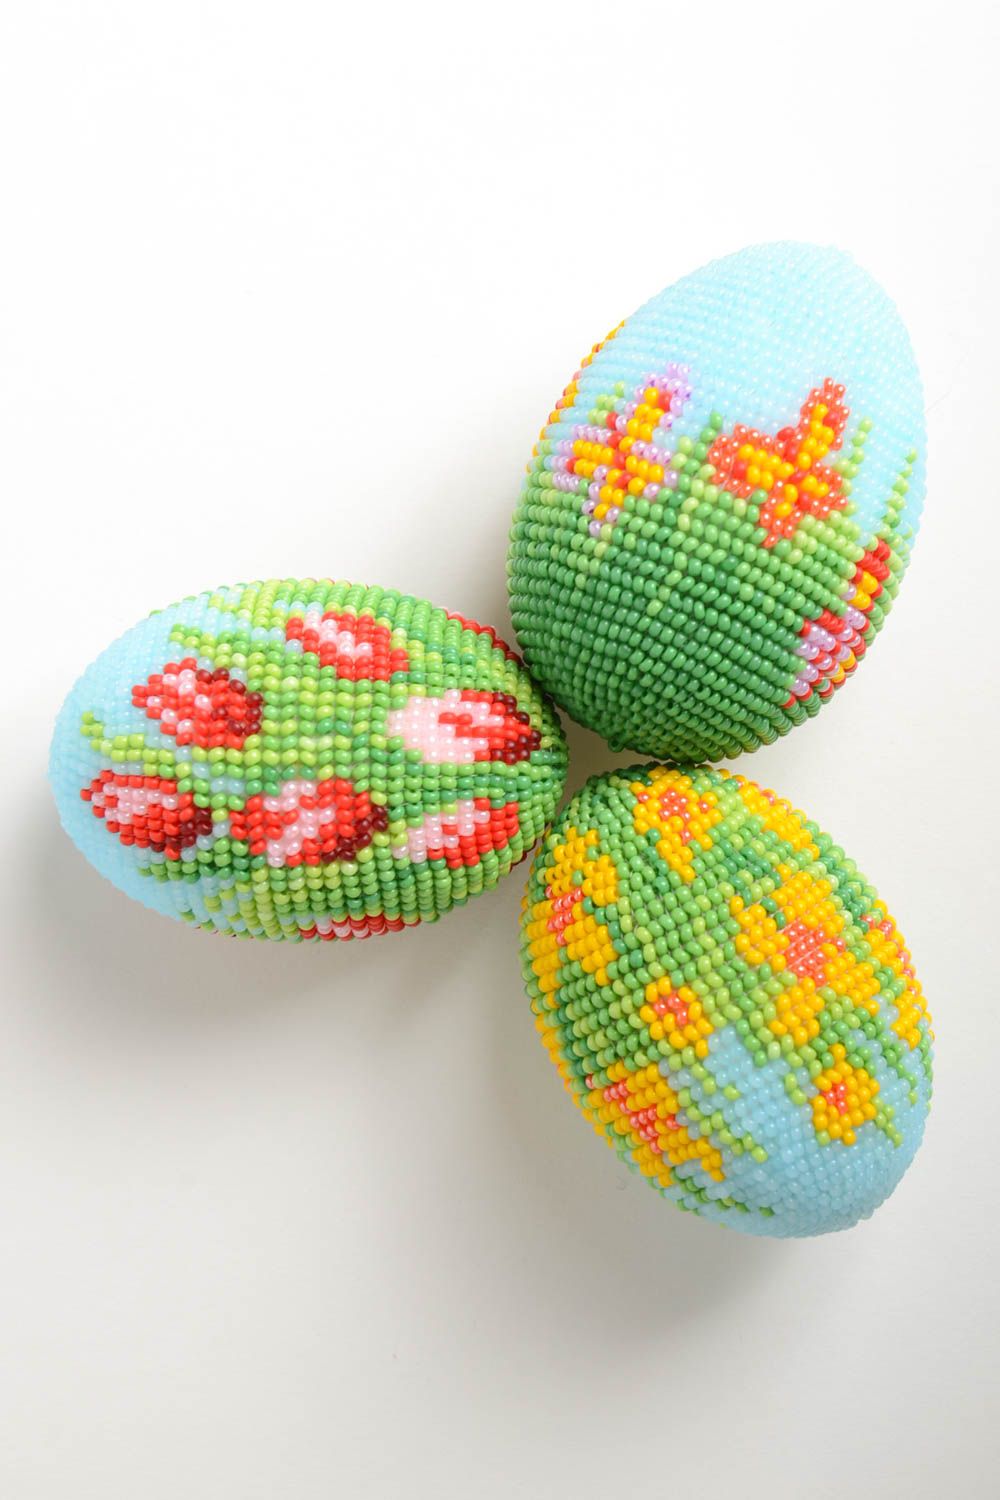 Пасхальное яйцо ручной работы пасхальный декор домашний декор сувенир к пасхе фото 3